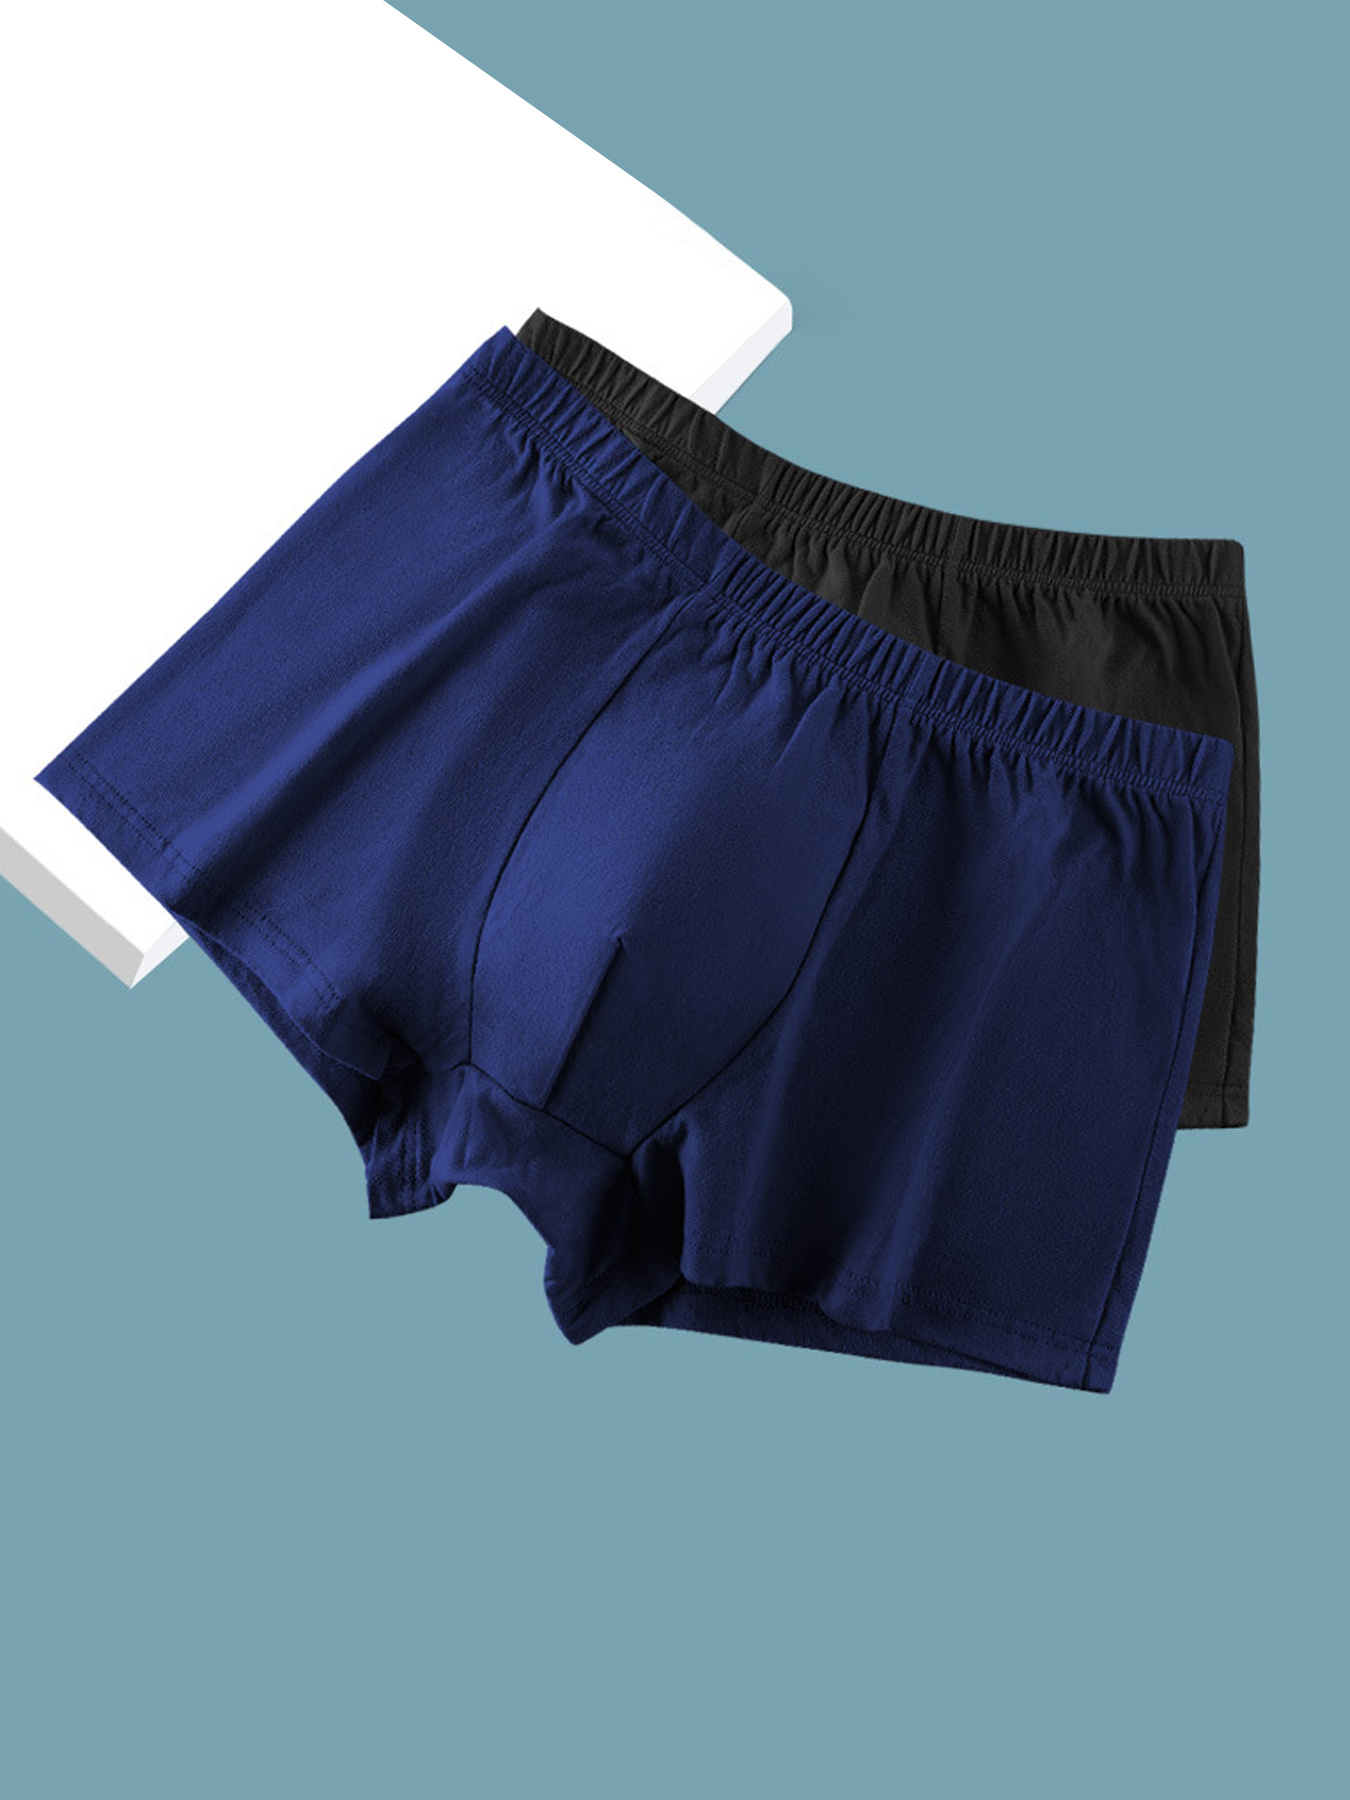 3PCS/2PCS Men's cotton underwear boxer shorts plaid shorts soft